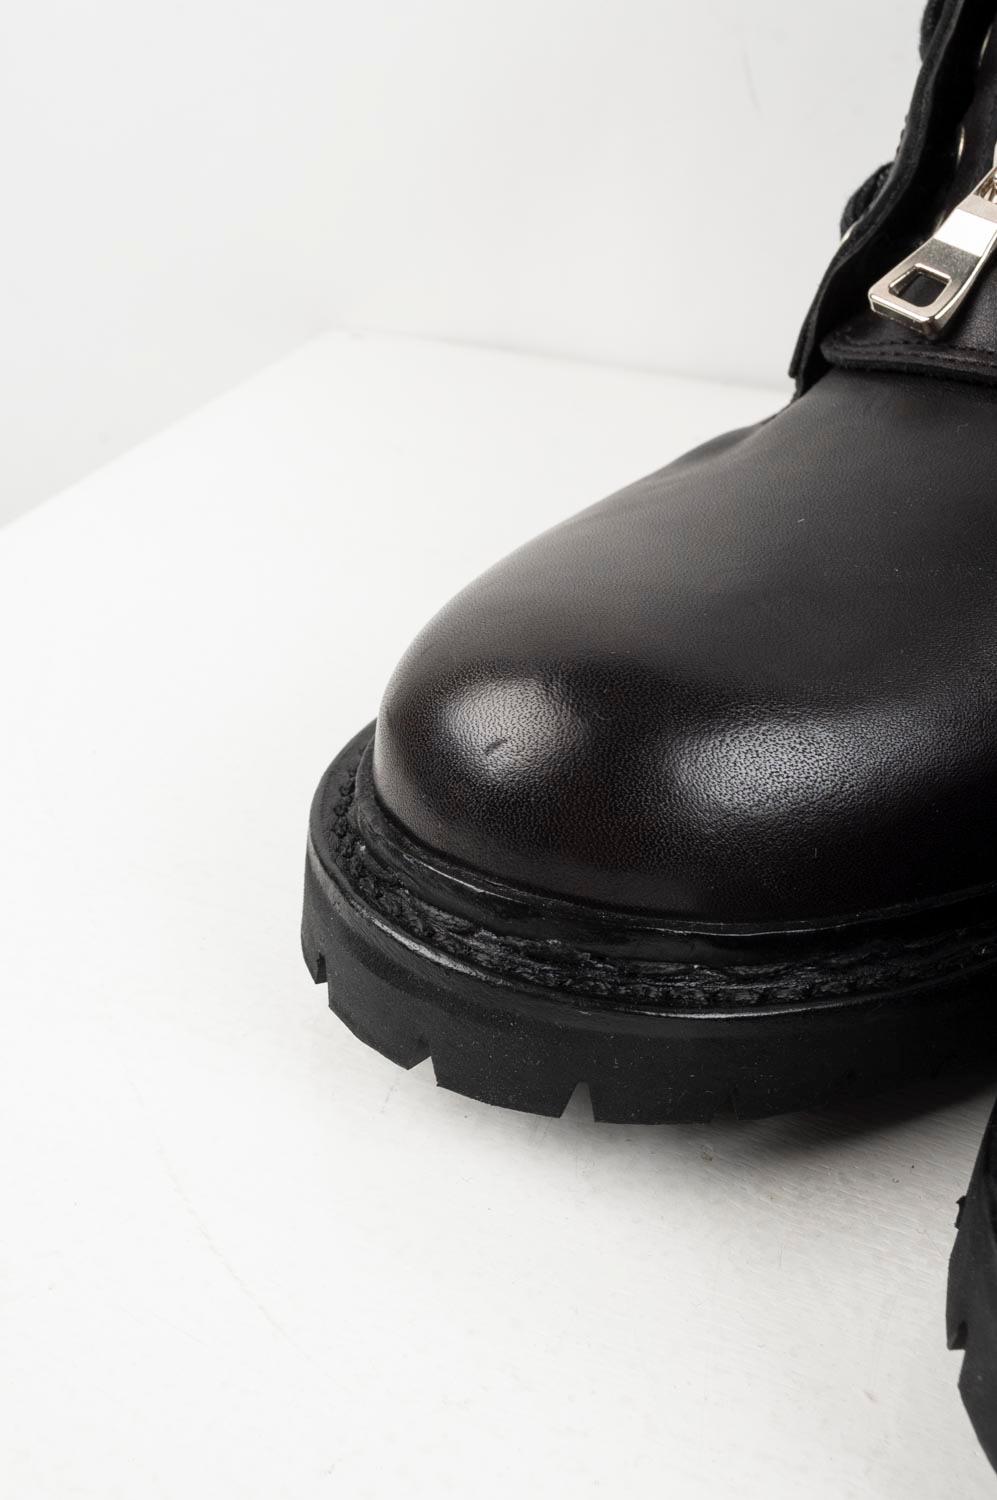 Balmain Boots Leather Men Shoes Size 40EU S316 4